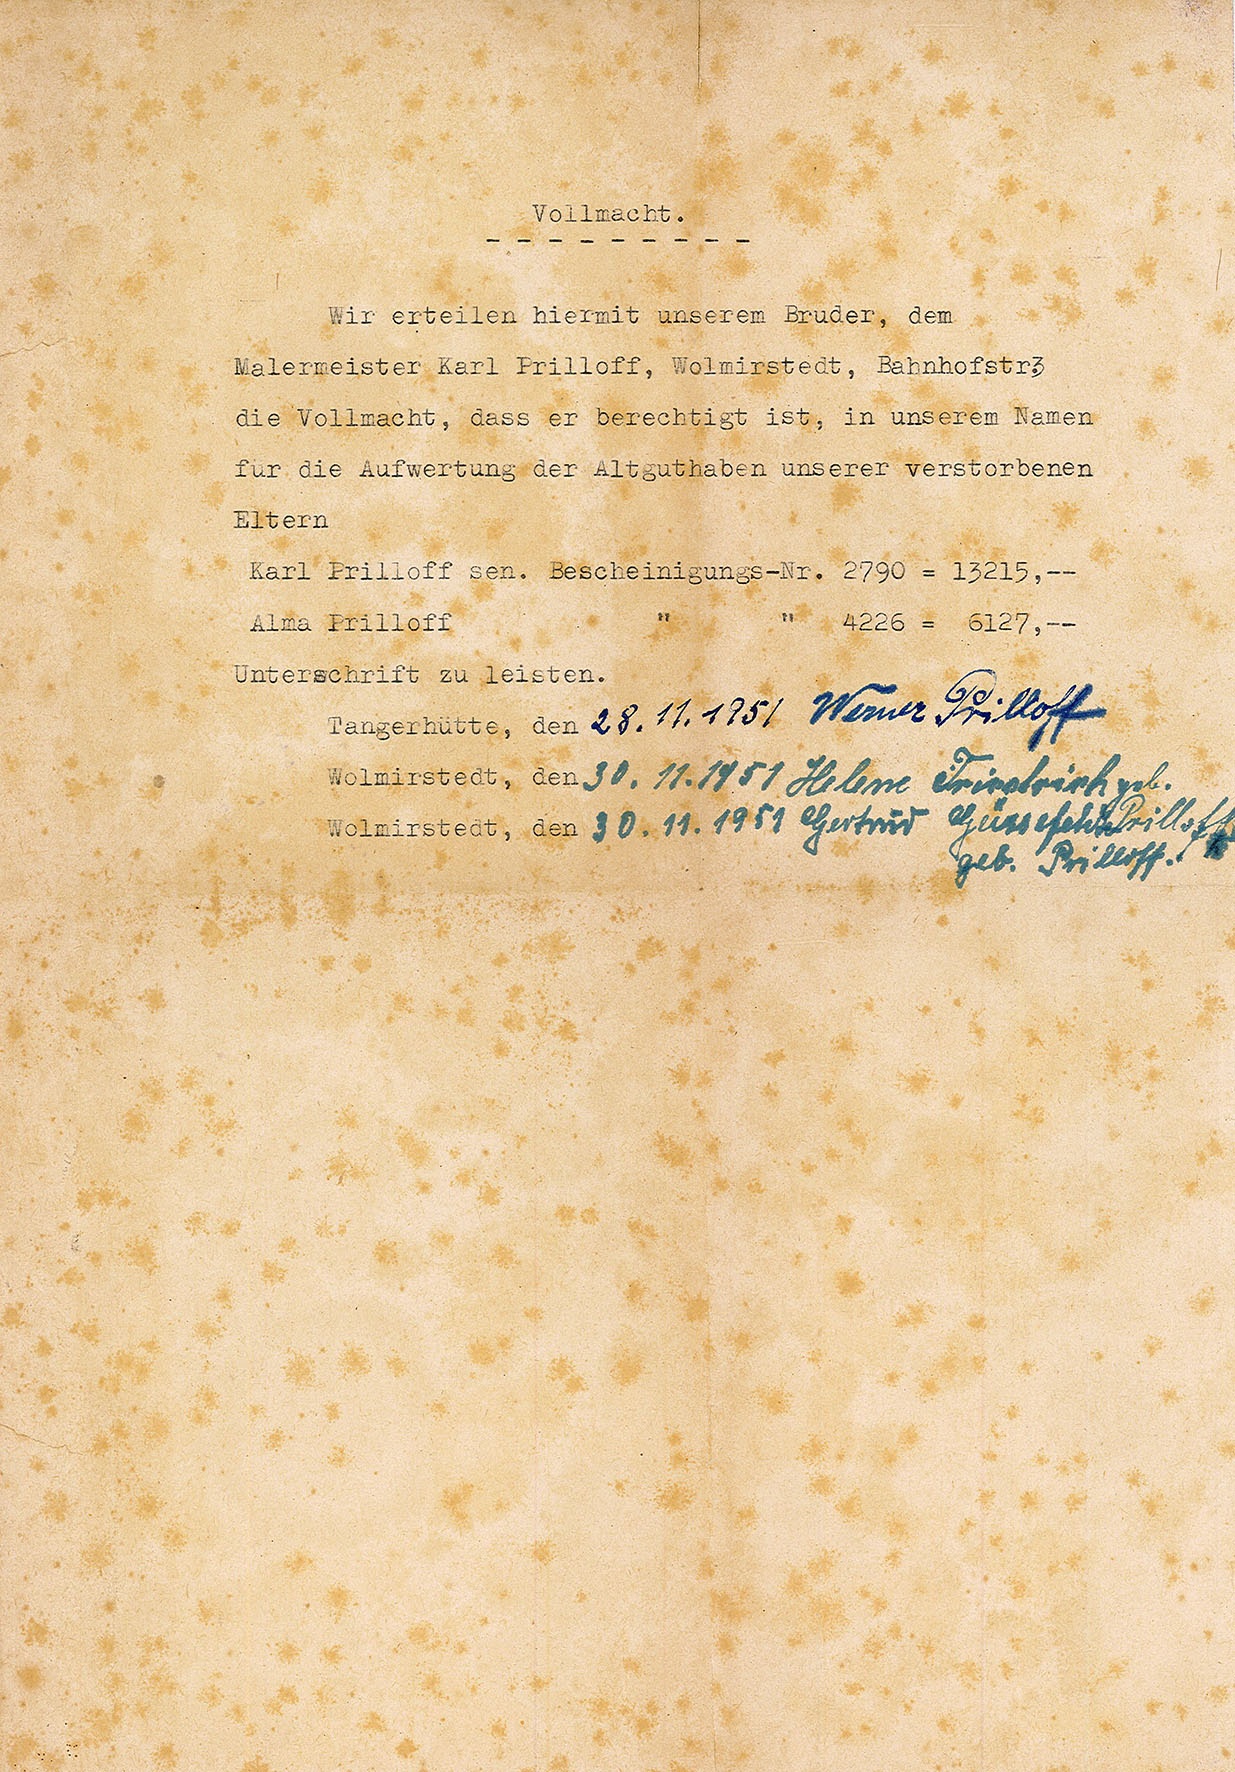 Vollmacht für Karl Prilloff zur Aufwertung von Altguthaben (November 1951) (Museum Wolmirstedt RR-F)